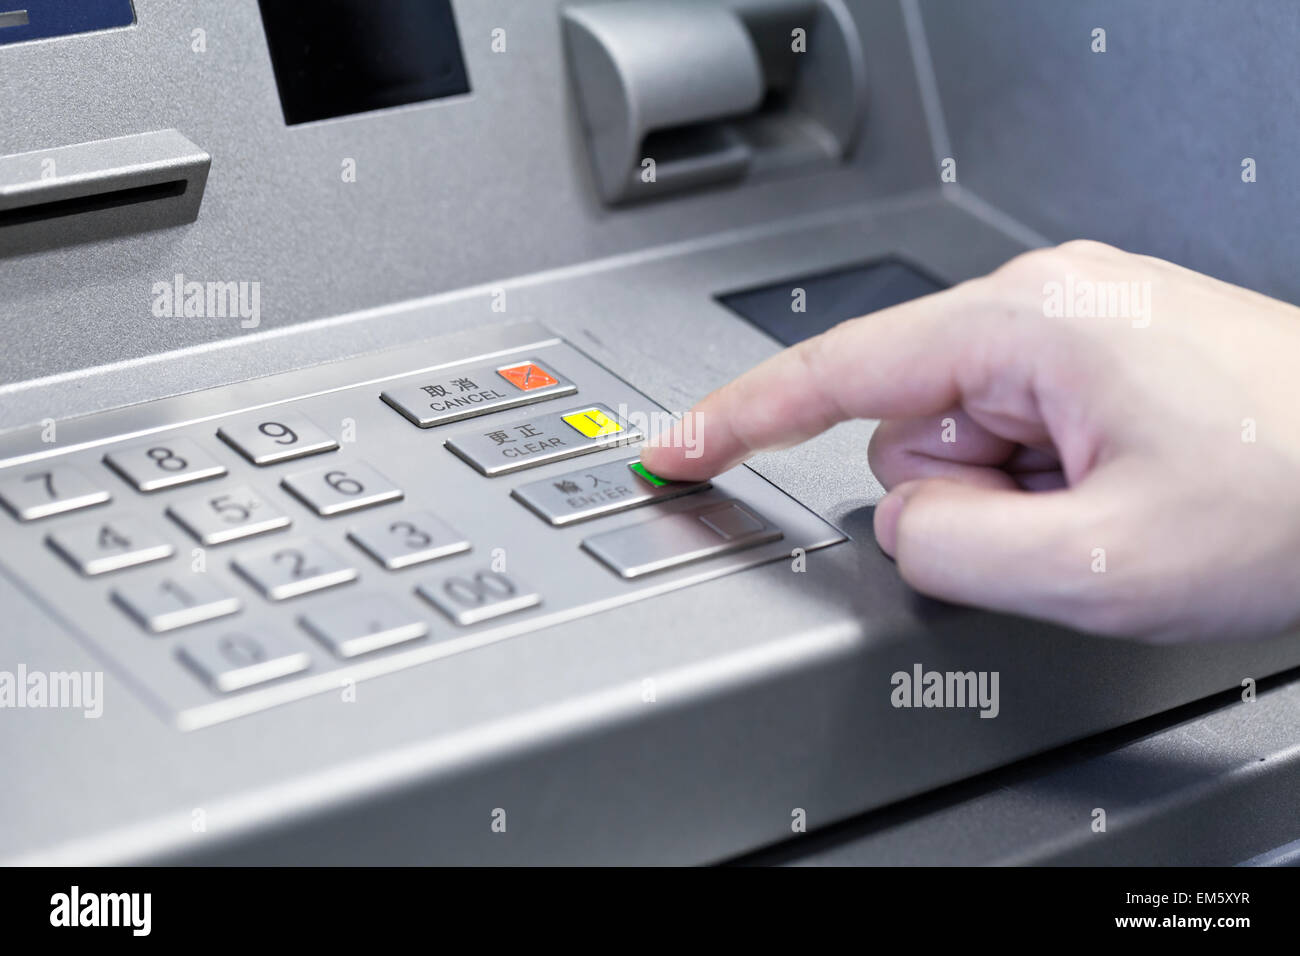 Human hand touching ATM machine Stock Photo